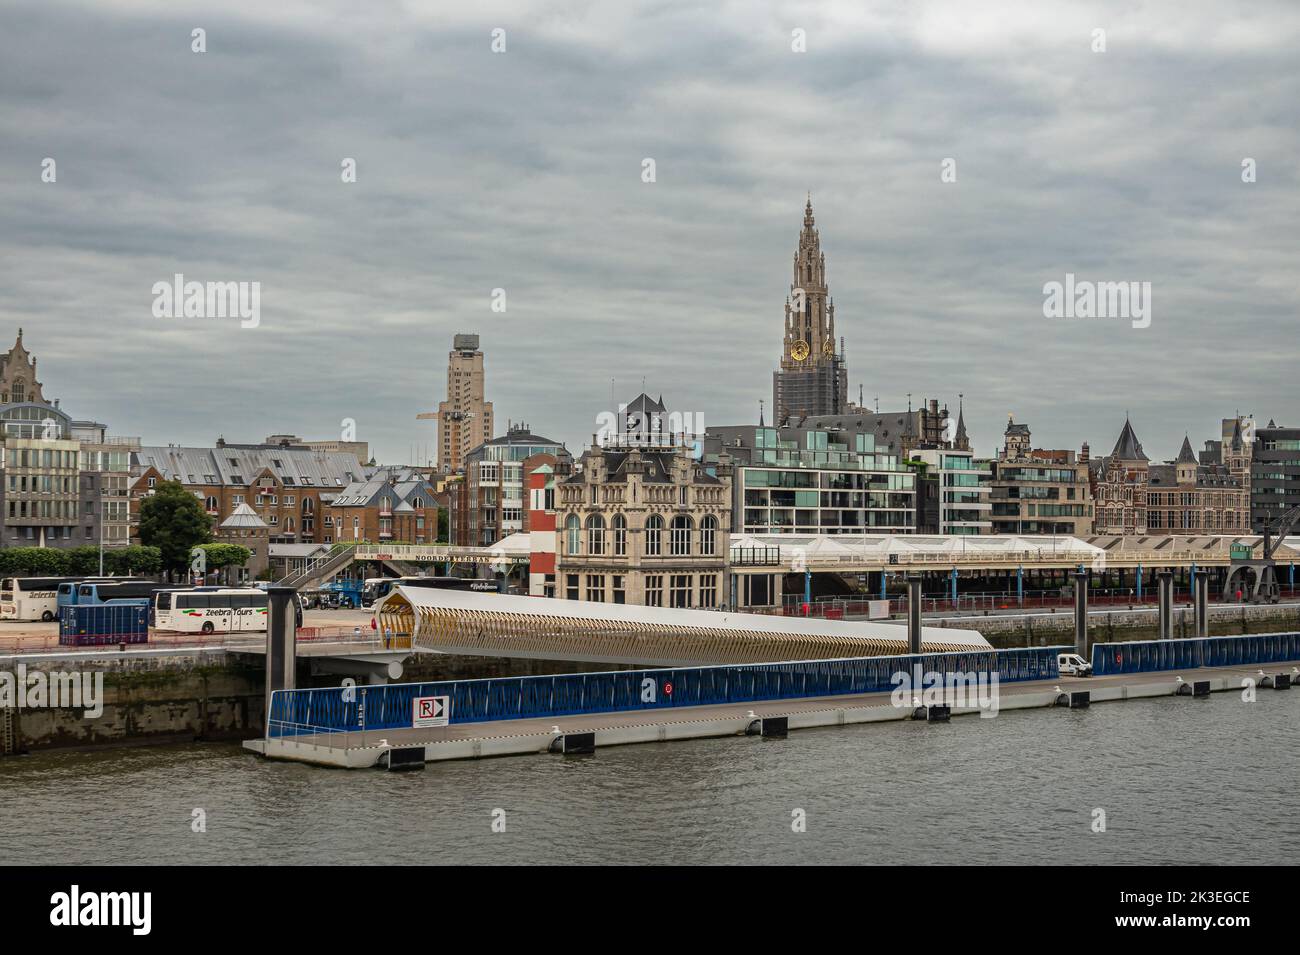 Anversa, Fiandre, Belgio - 10 luglio 2022: Industria lungo il fiume Scheldt. Skyline della città dietro il ponton di sbarco ormeggiato al molo sotto la fitta nuvola Foto Stock